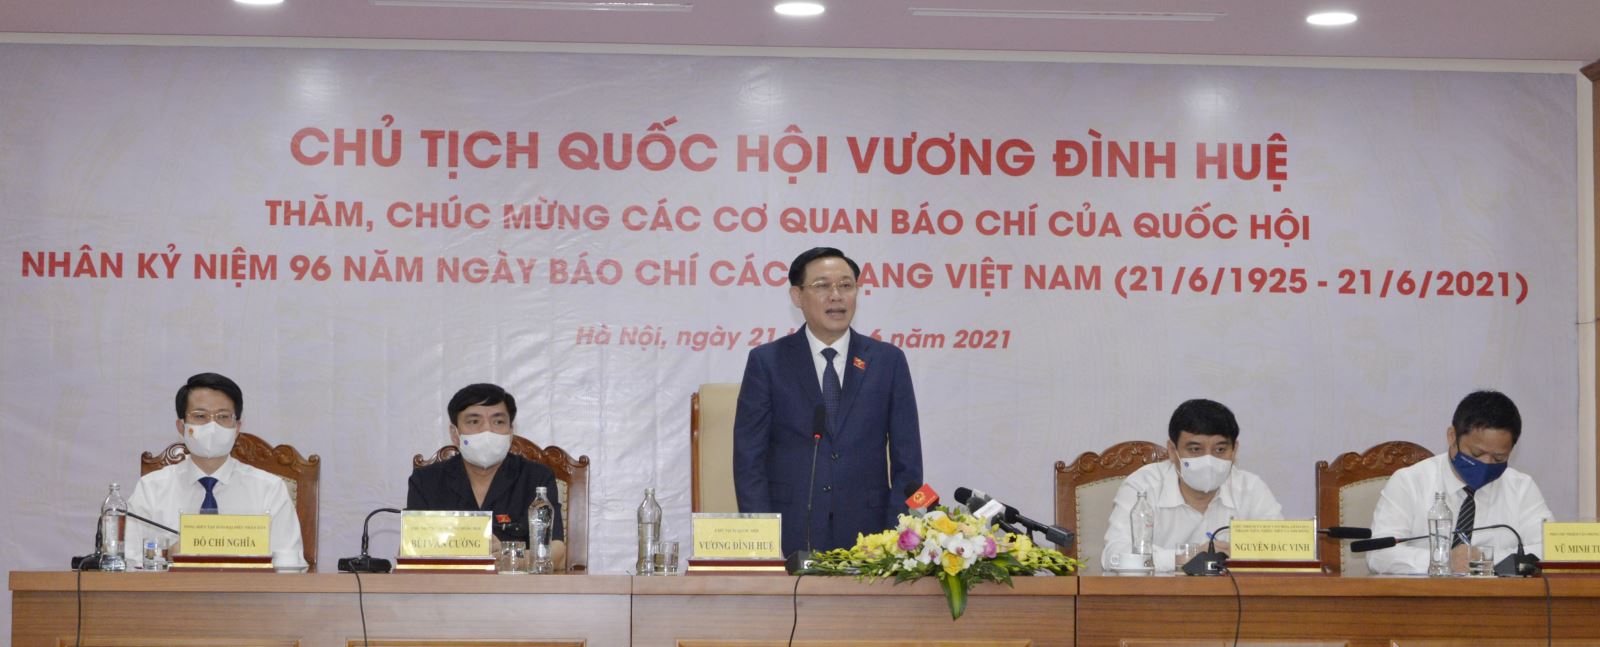 Chủ tịch Quốc hội Vương Đình Huệ thăm các cơ quan báo chí.